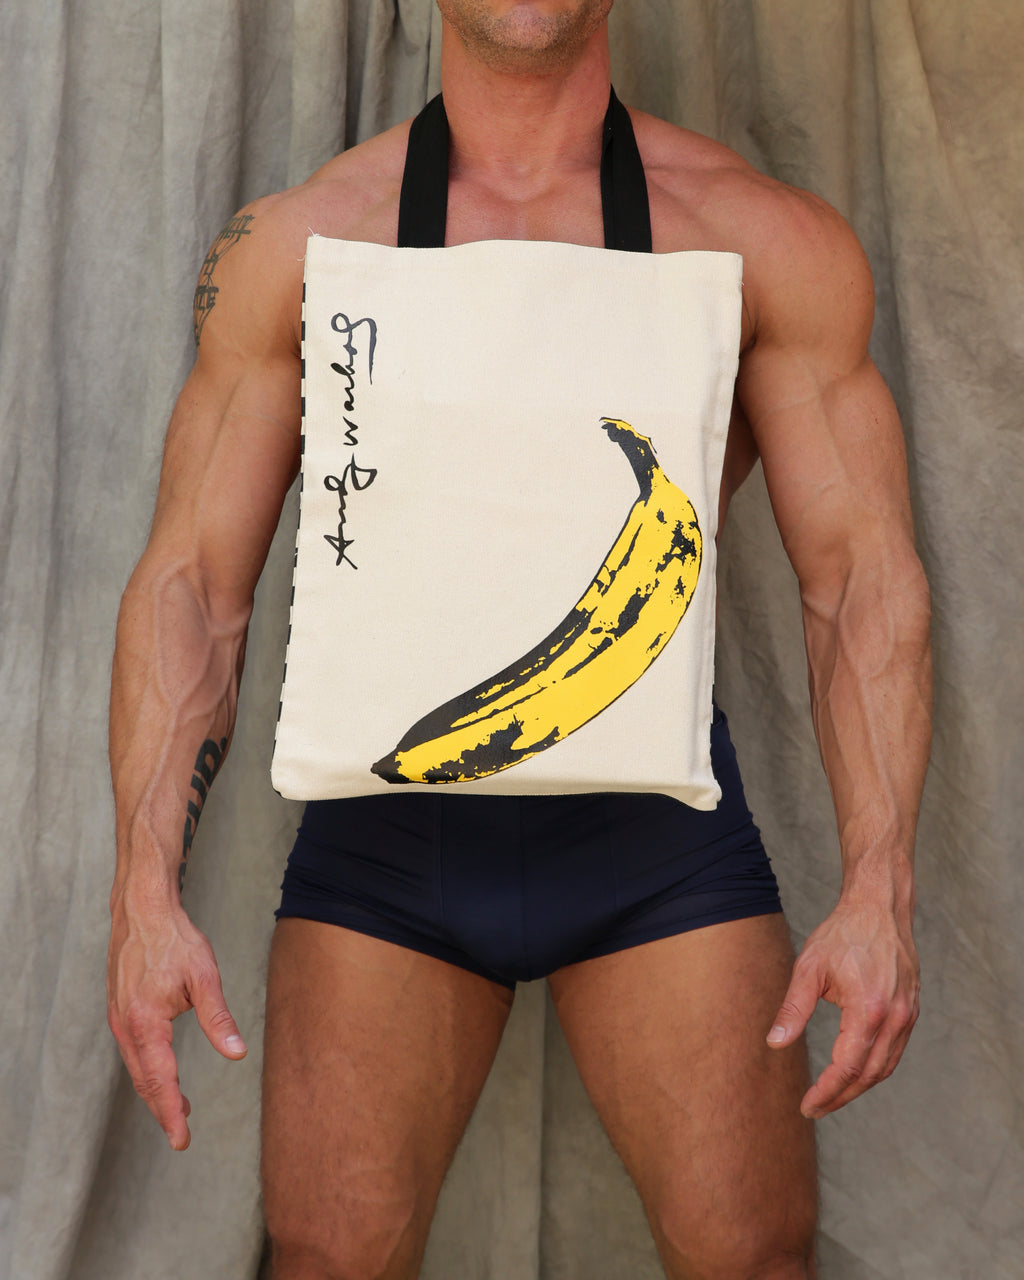 Andy Warhol Banana Tote Bag